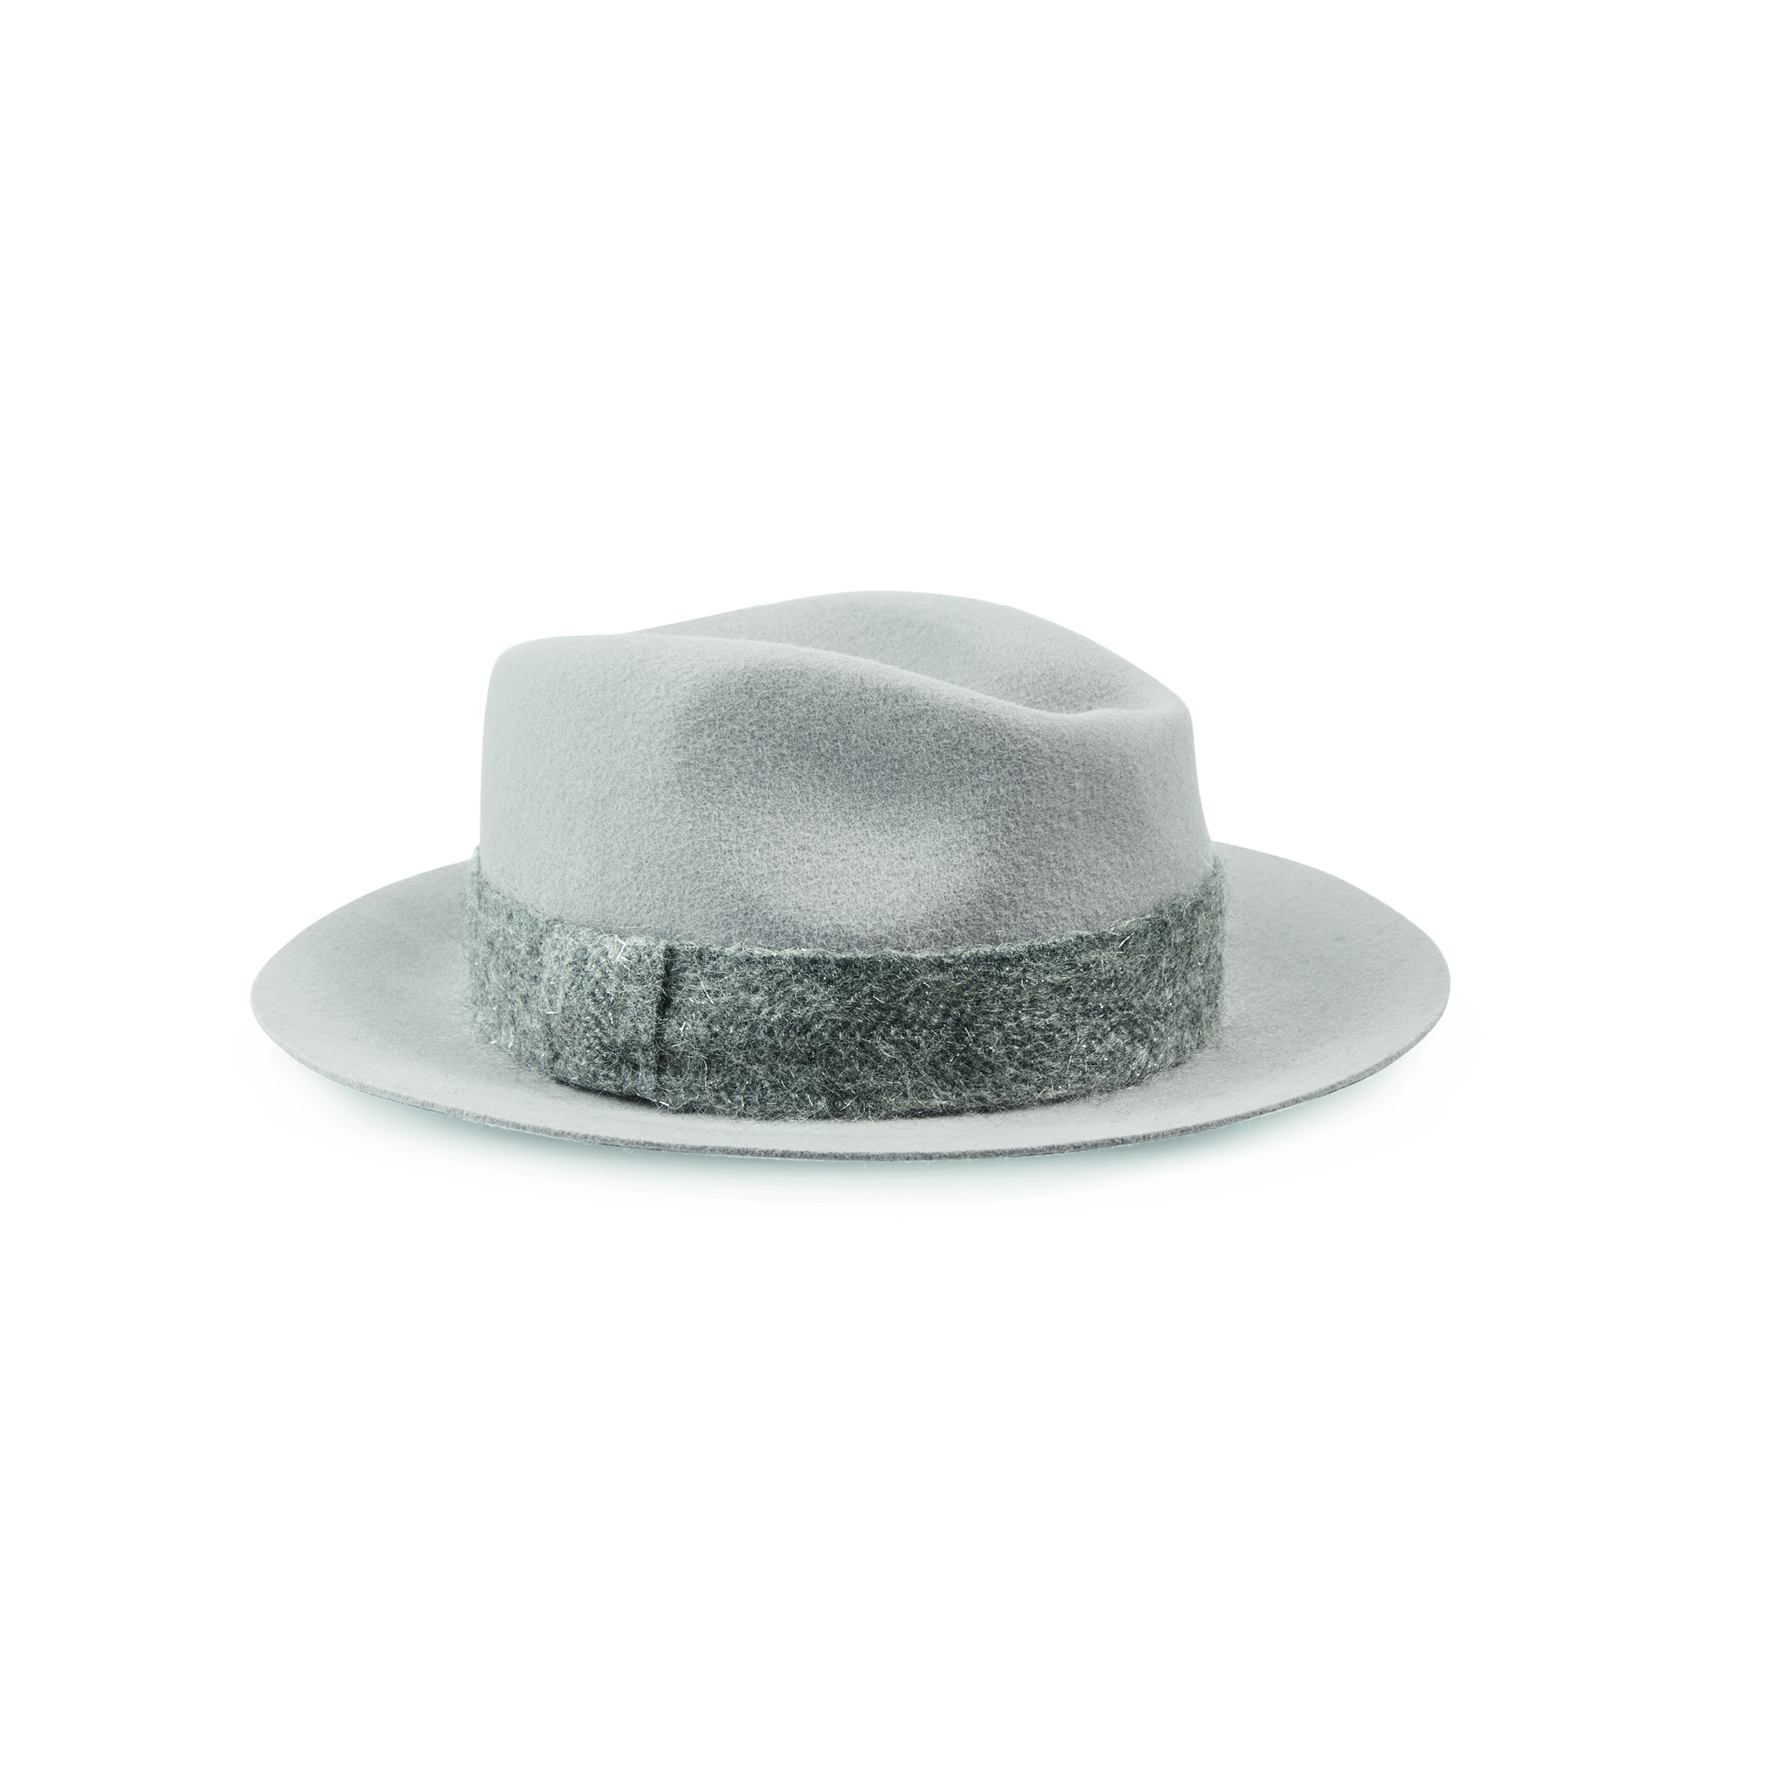 Женская шляпа Marc Cain, цена по запросу&nbsp;(marc-cain.com)